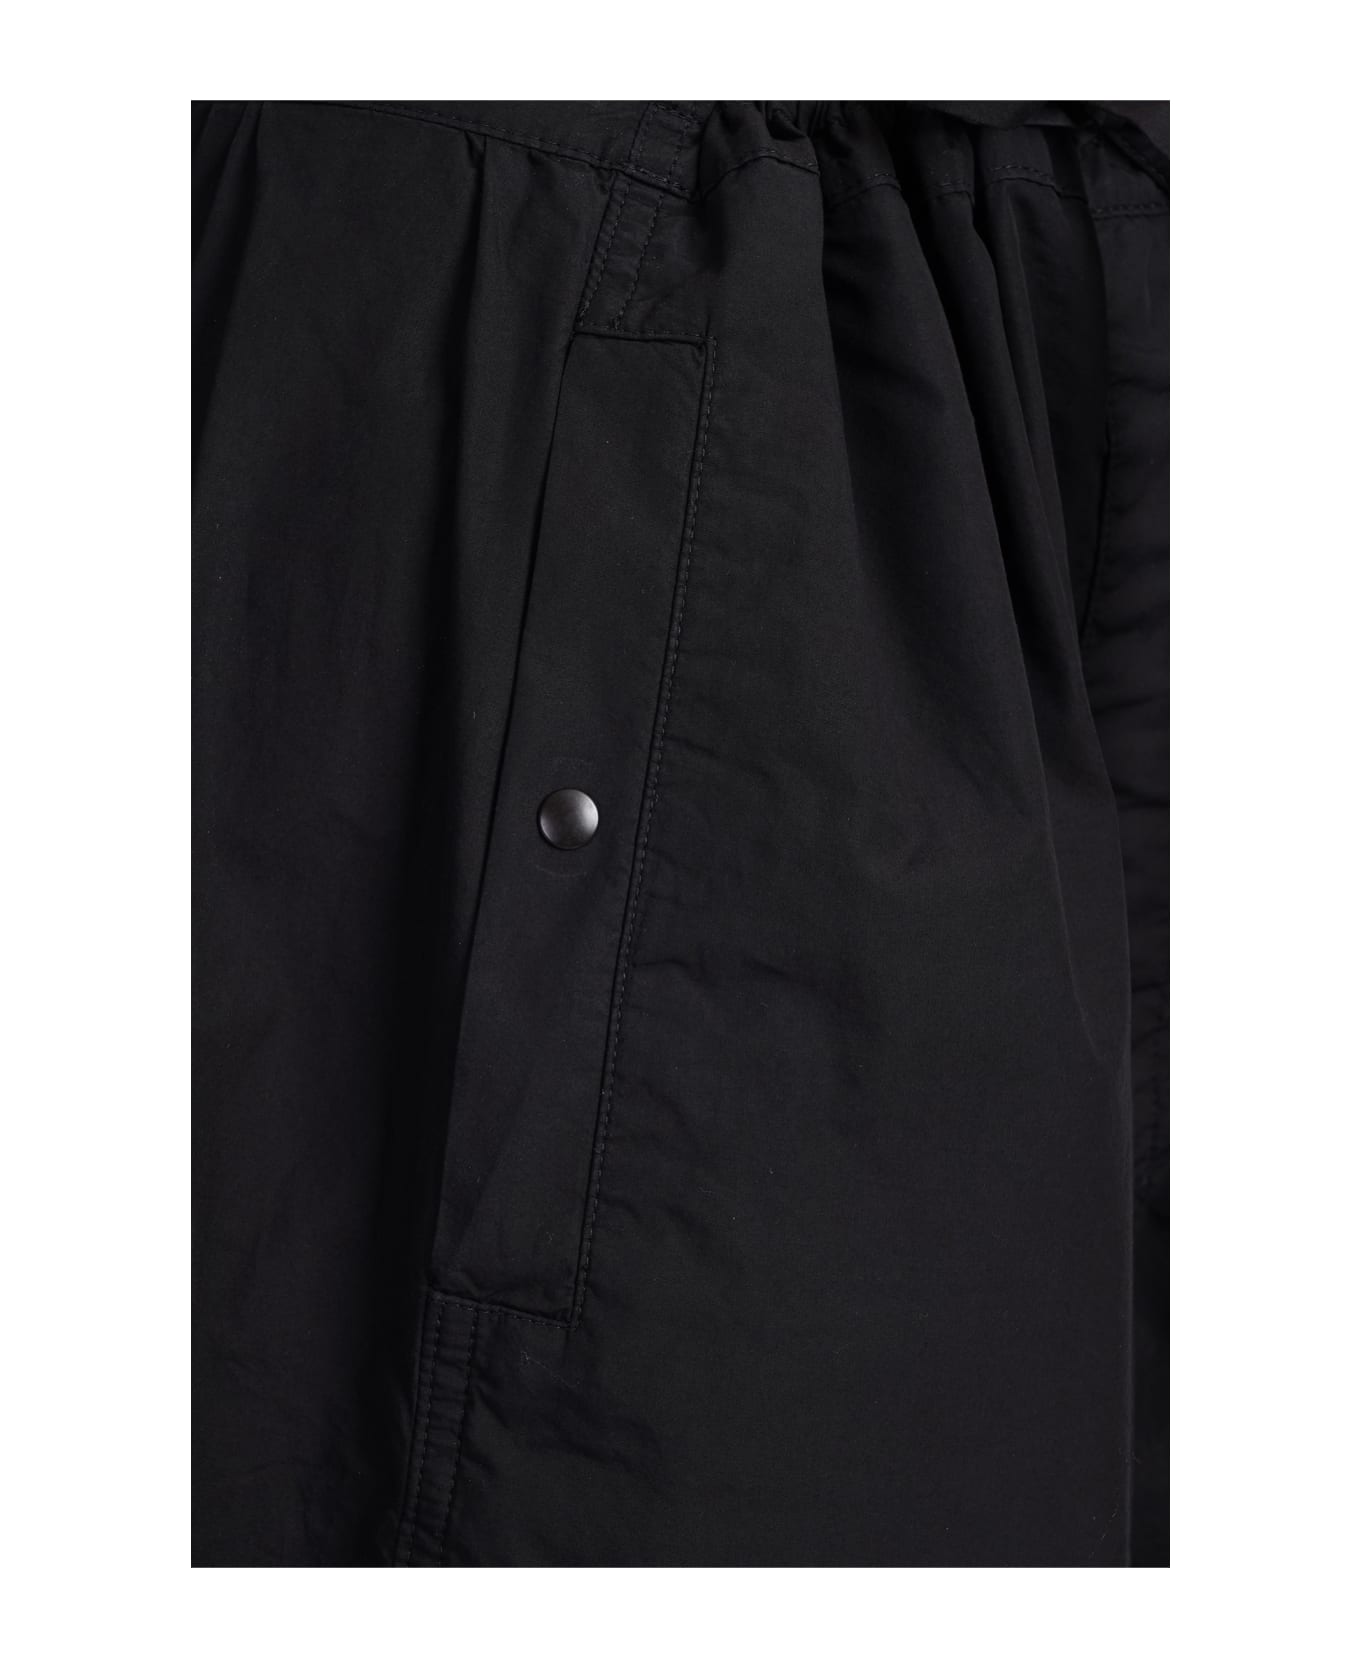 Lemaire Pants In Black Cotton - black